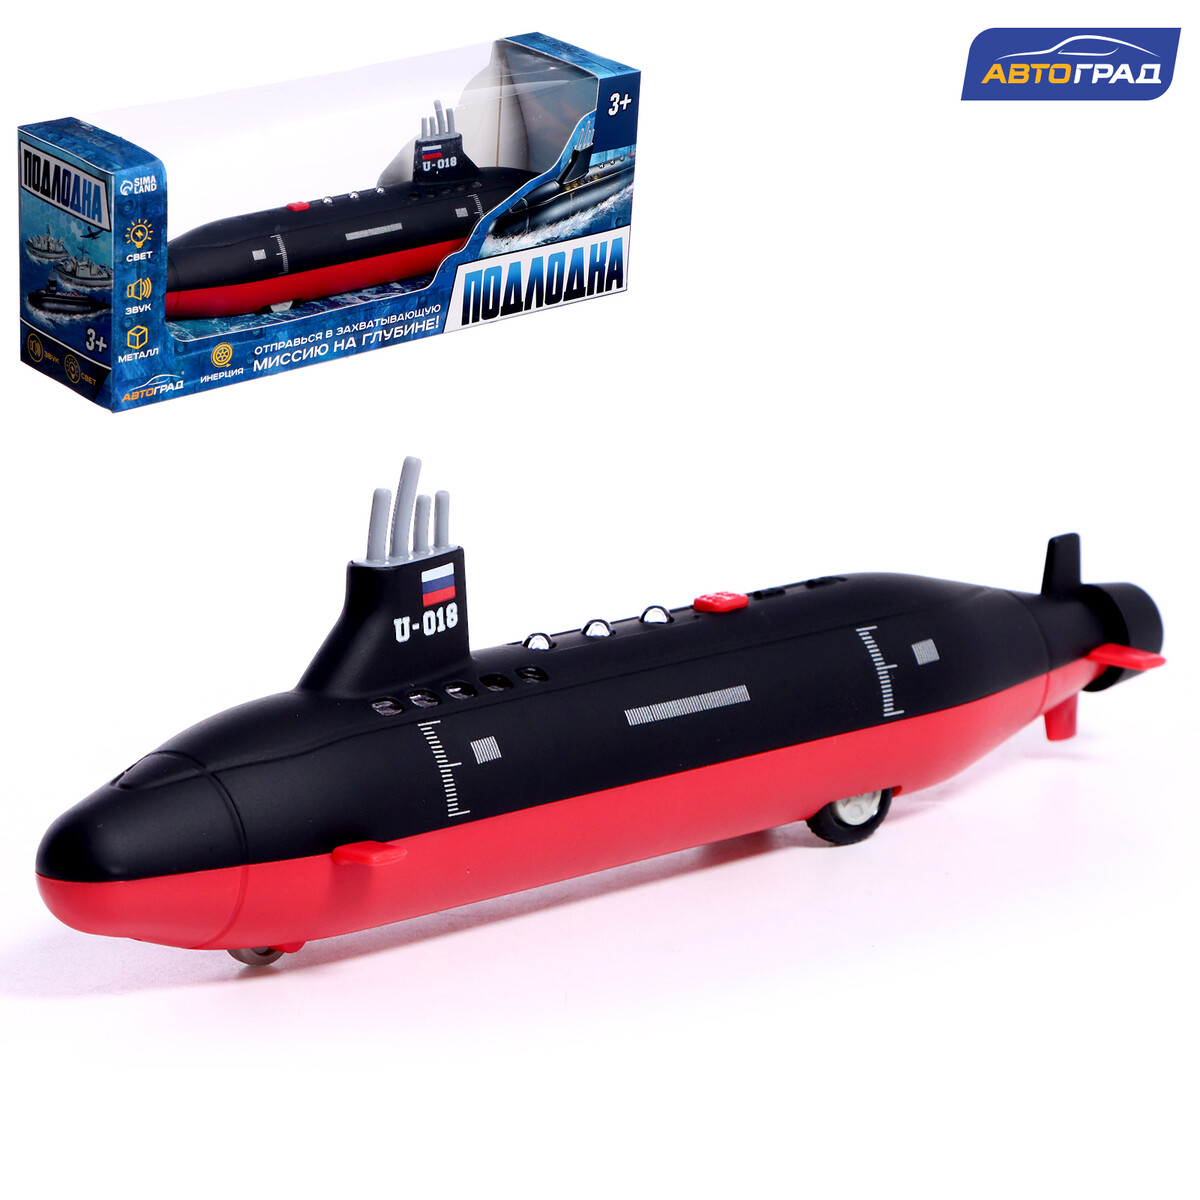 Подводная лодка, металлическая, свет, звук, инерция Автоград